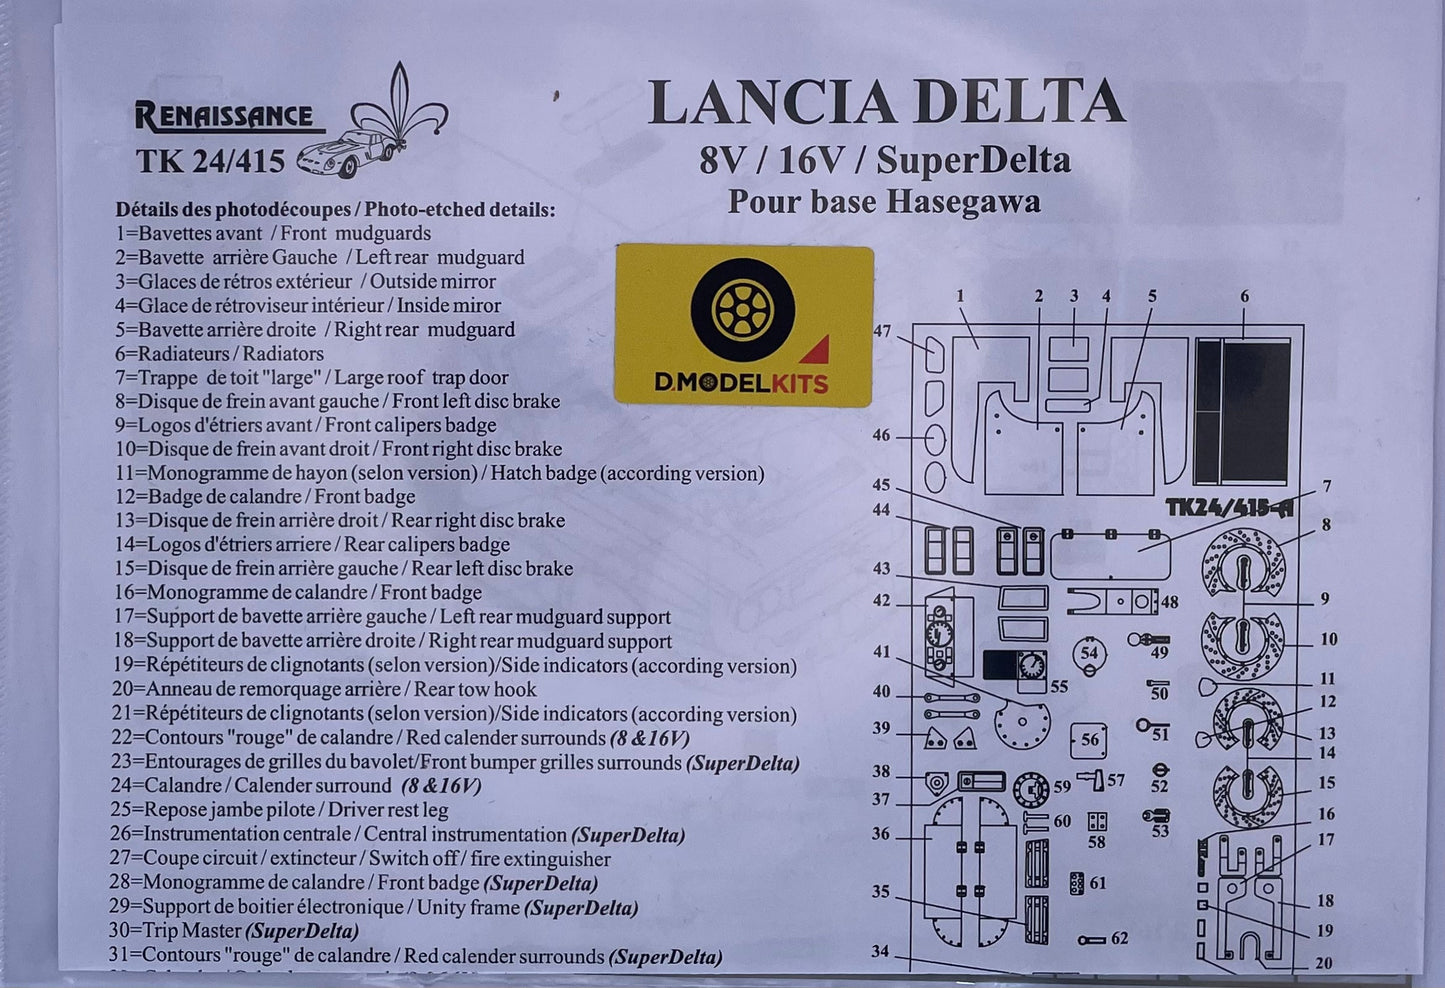 DETAIL SET UP LANCIA DELTA FOR 8V / HF INTEGRALE 16V / SUPER DELTA VERSIONS